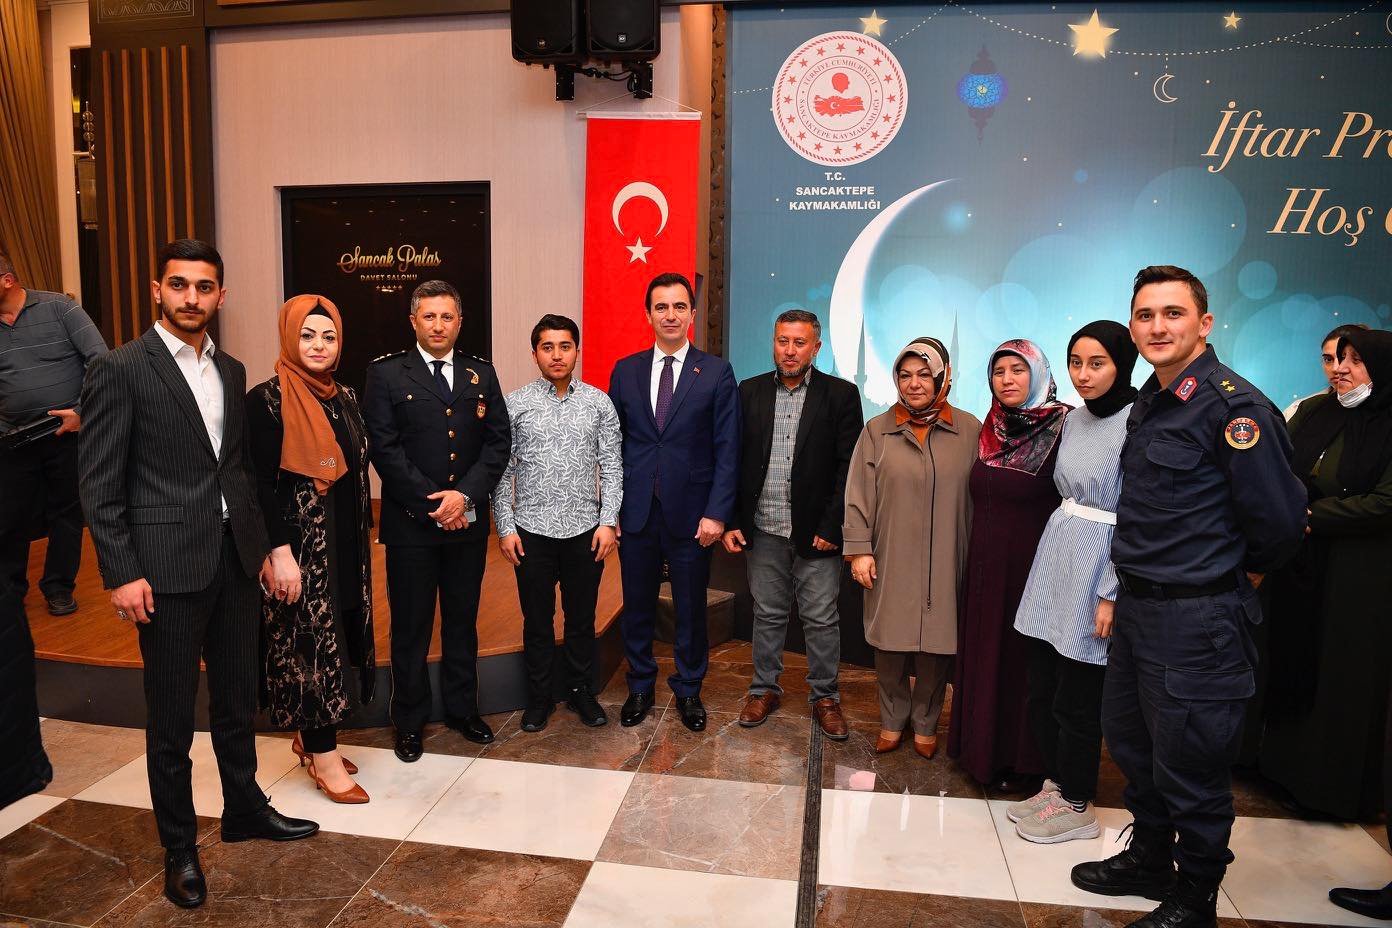 Sancaktepe Belediyesi ve Sancaktepe Kaymakamlığı iş birliği ile Şehit Aileleri ve Gaziler onuruna iftar yemeği düzenlendi.